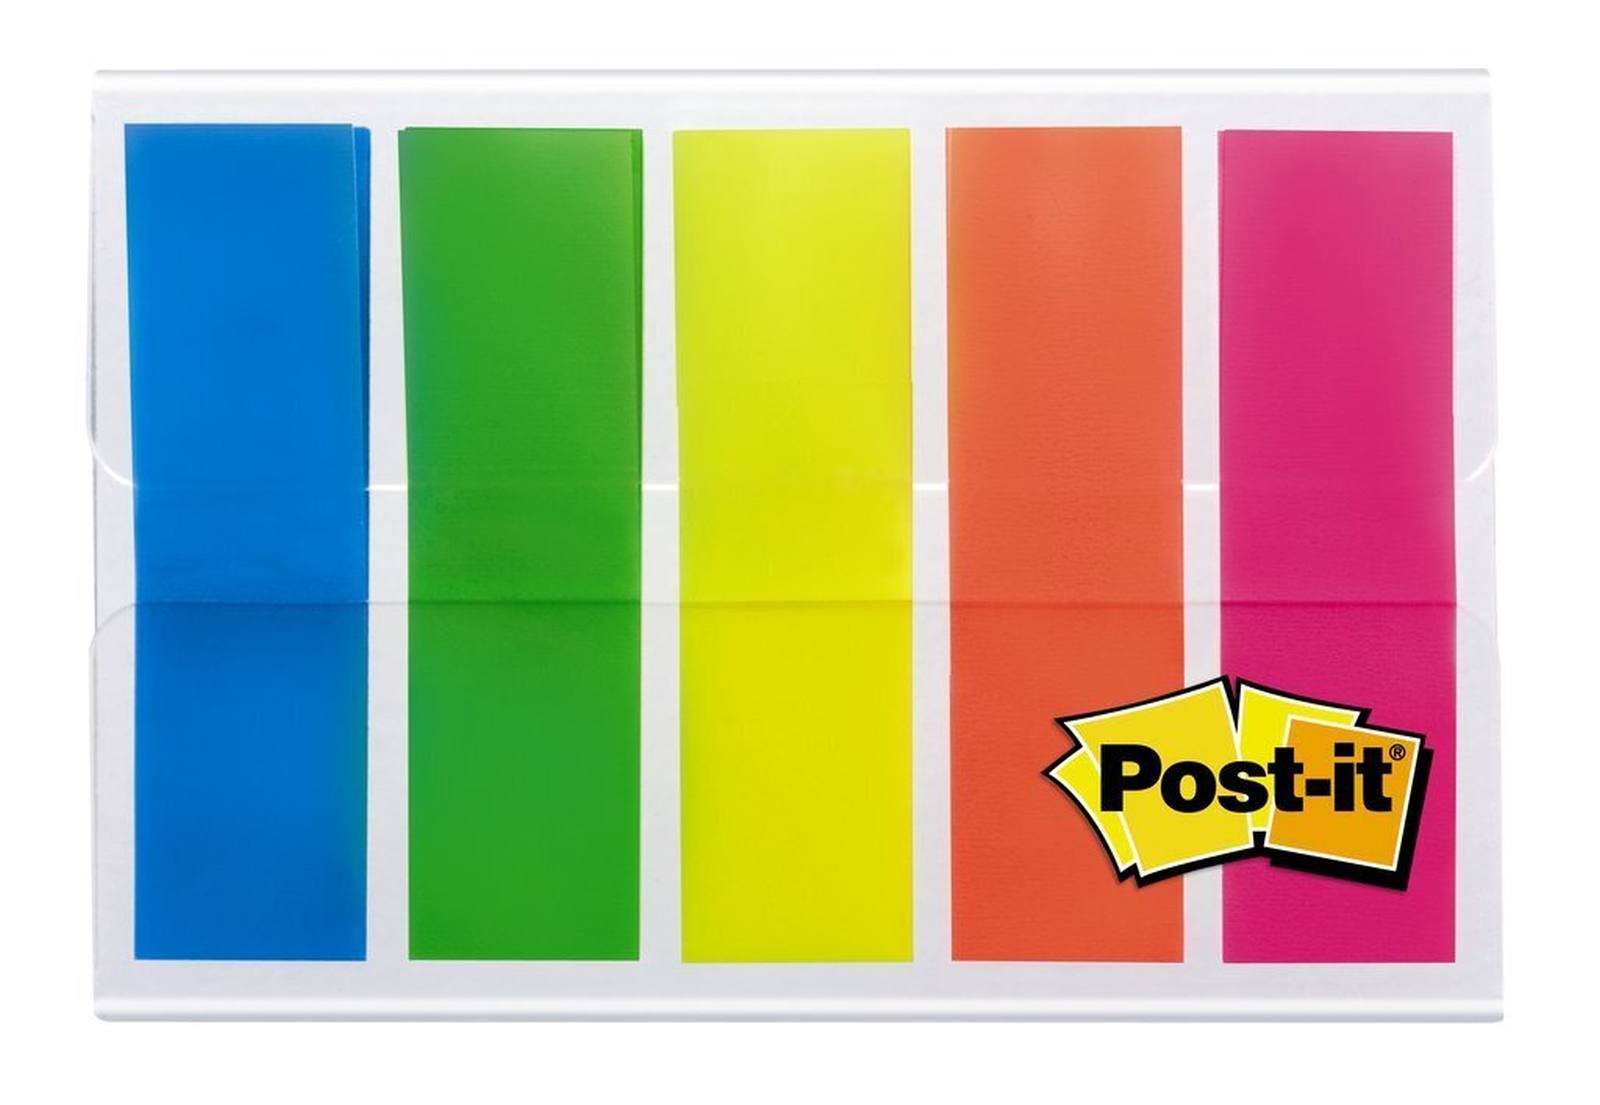 3M Post-it Index 683HF5, 11,9 mm x 43,2 mm, blau, gelb, grün, orange, pink, 5 x 20 Haftstreifen